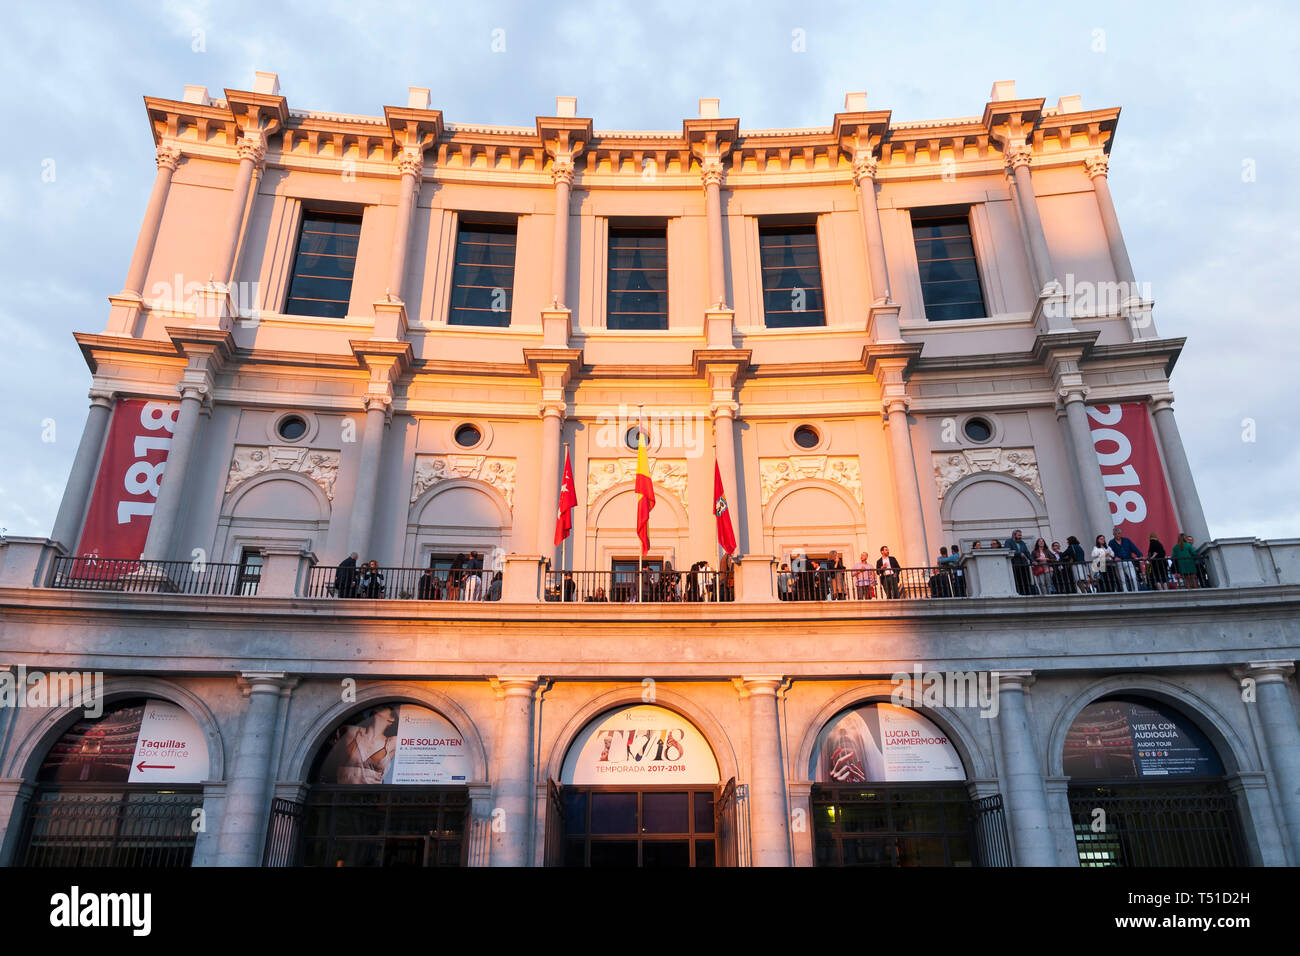 Teatro Real de la ópera de Madrid. España. Stock Photo